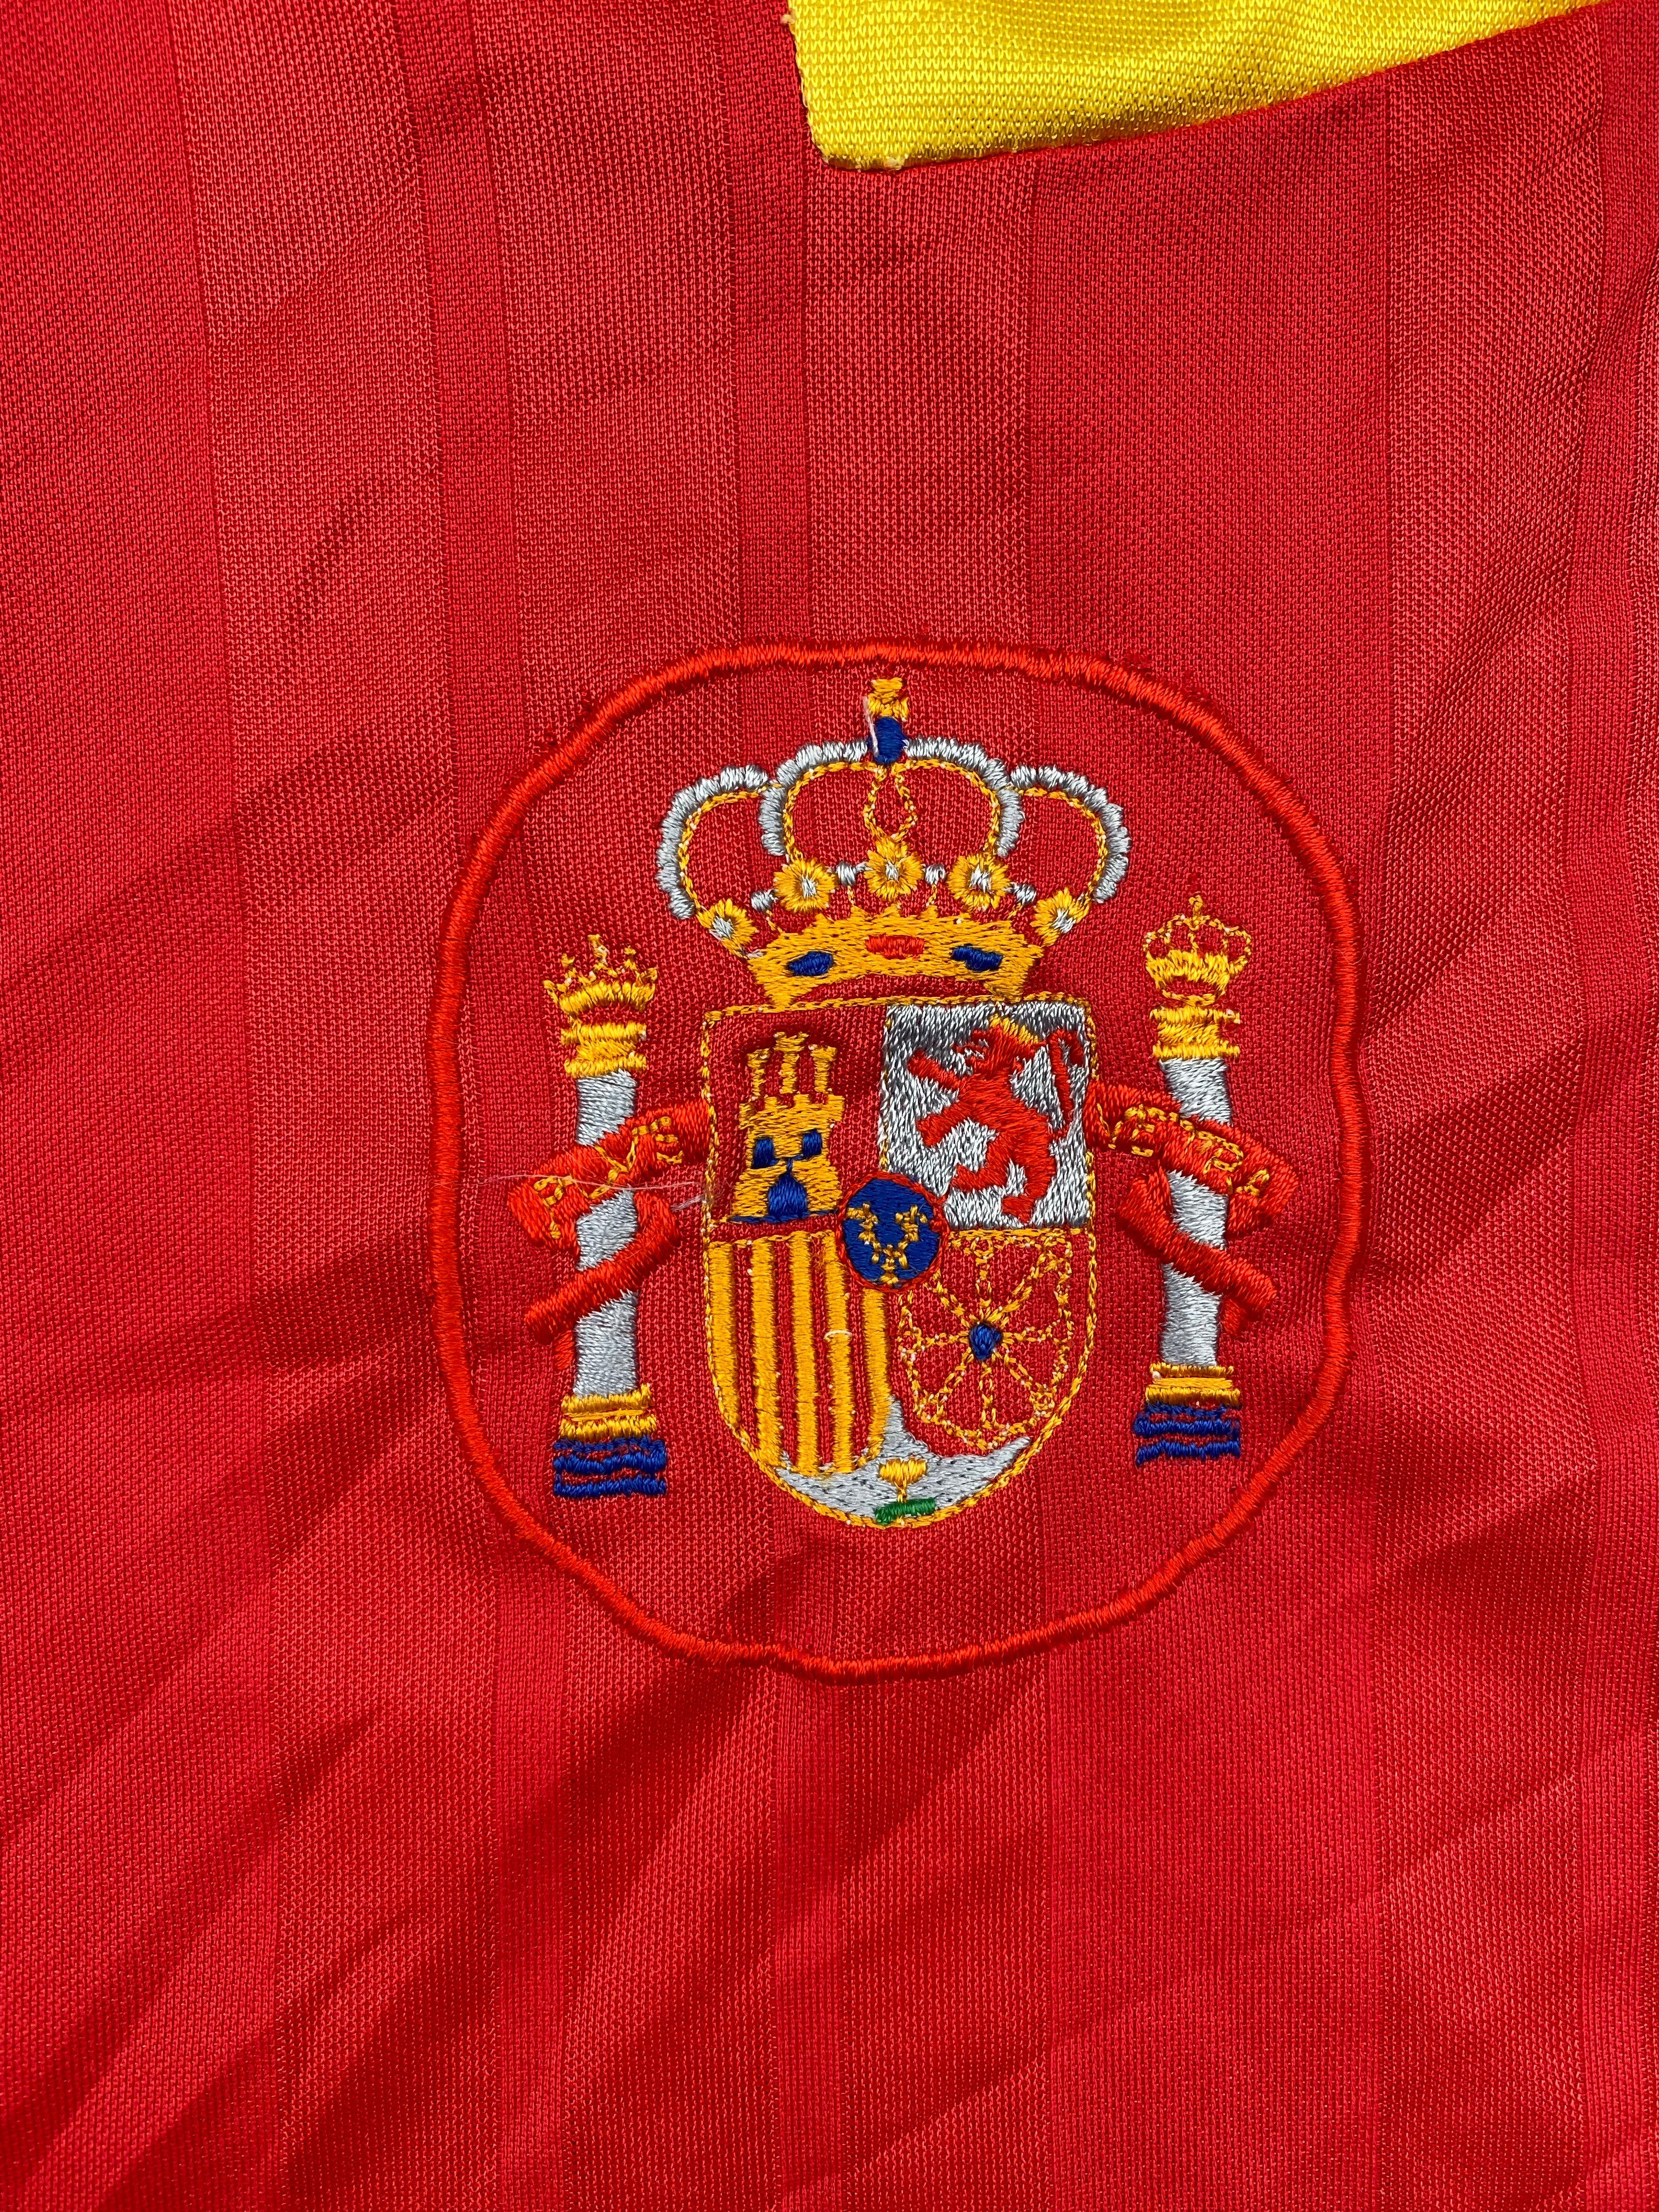 1992/94 Spain Home Shirt (L) 9/10